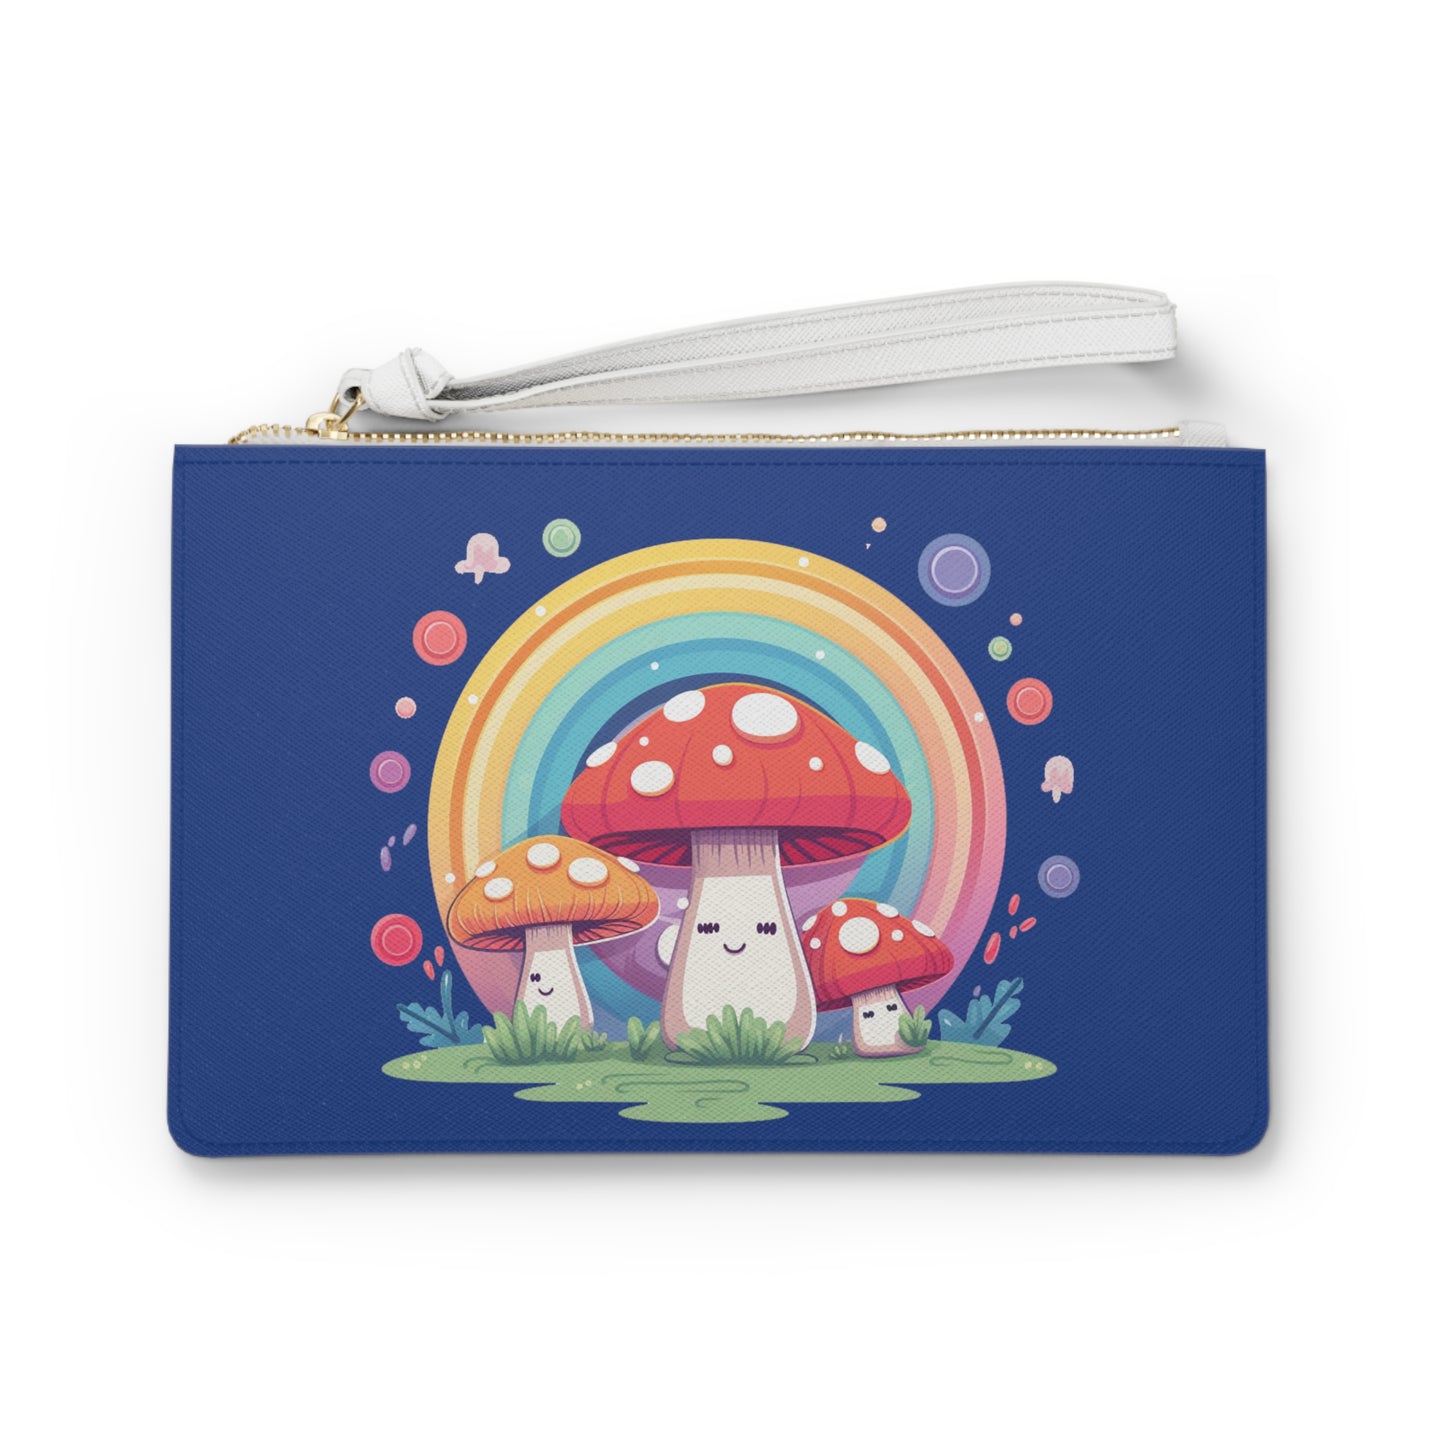 Rainbow Colorful Mushroom Clutch Bag